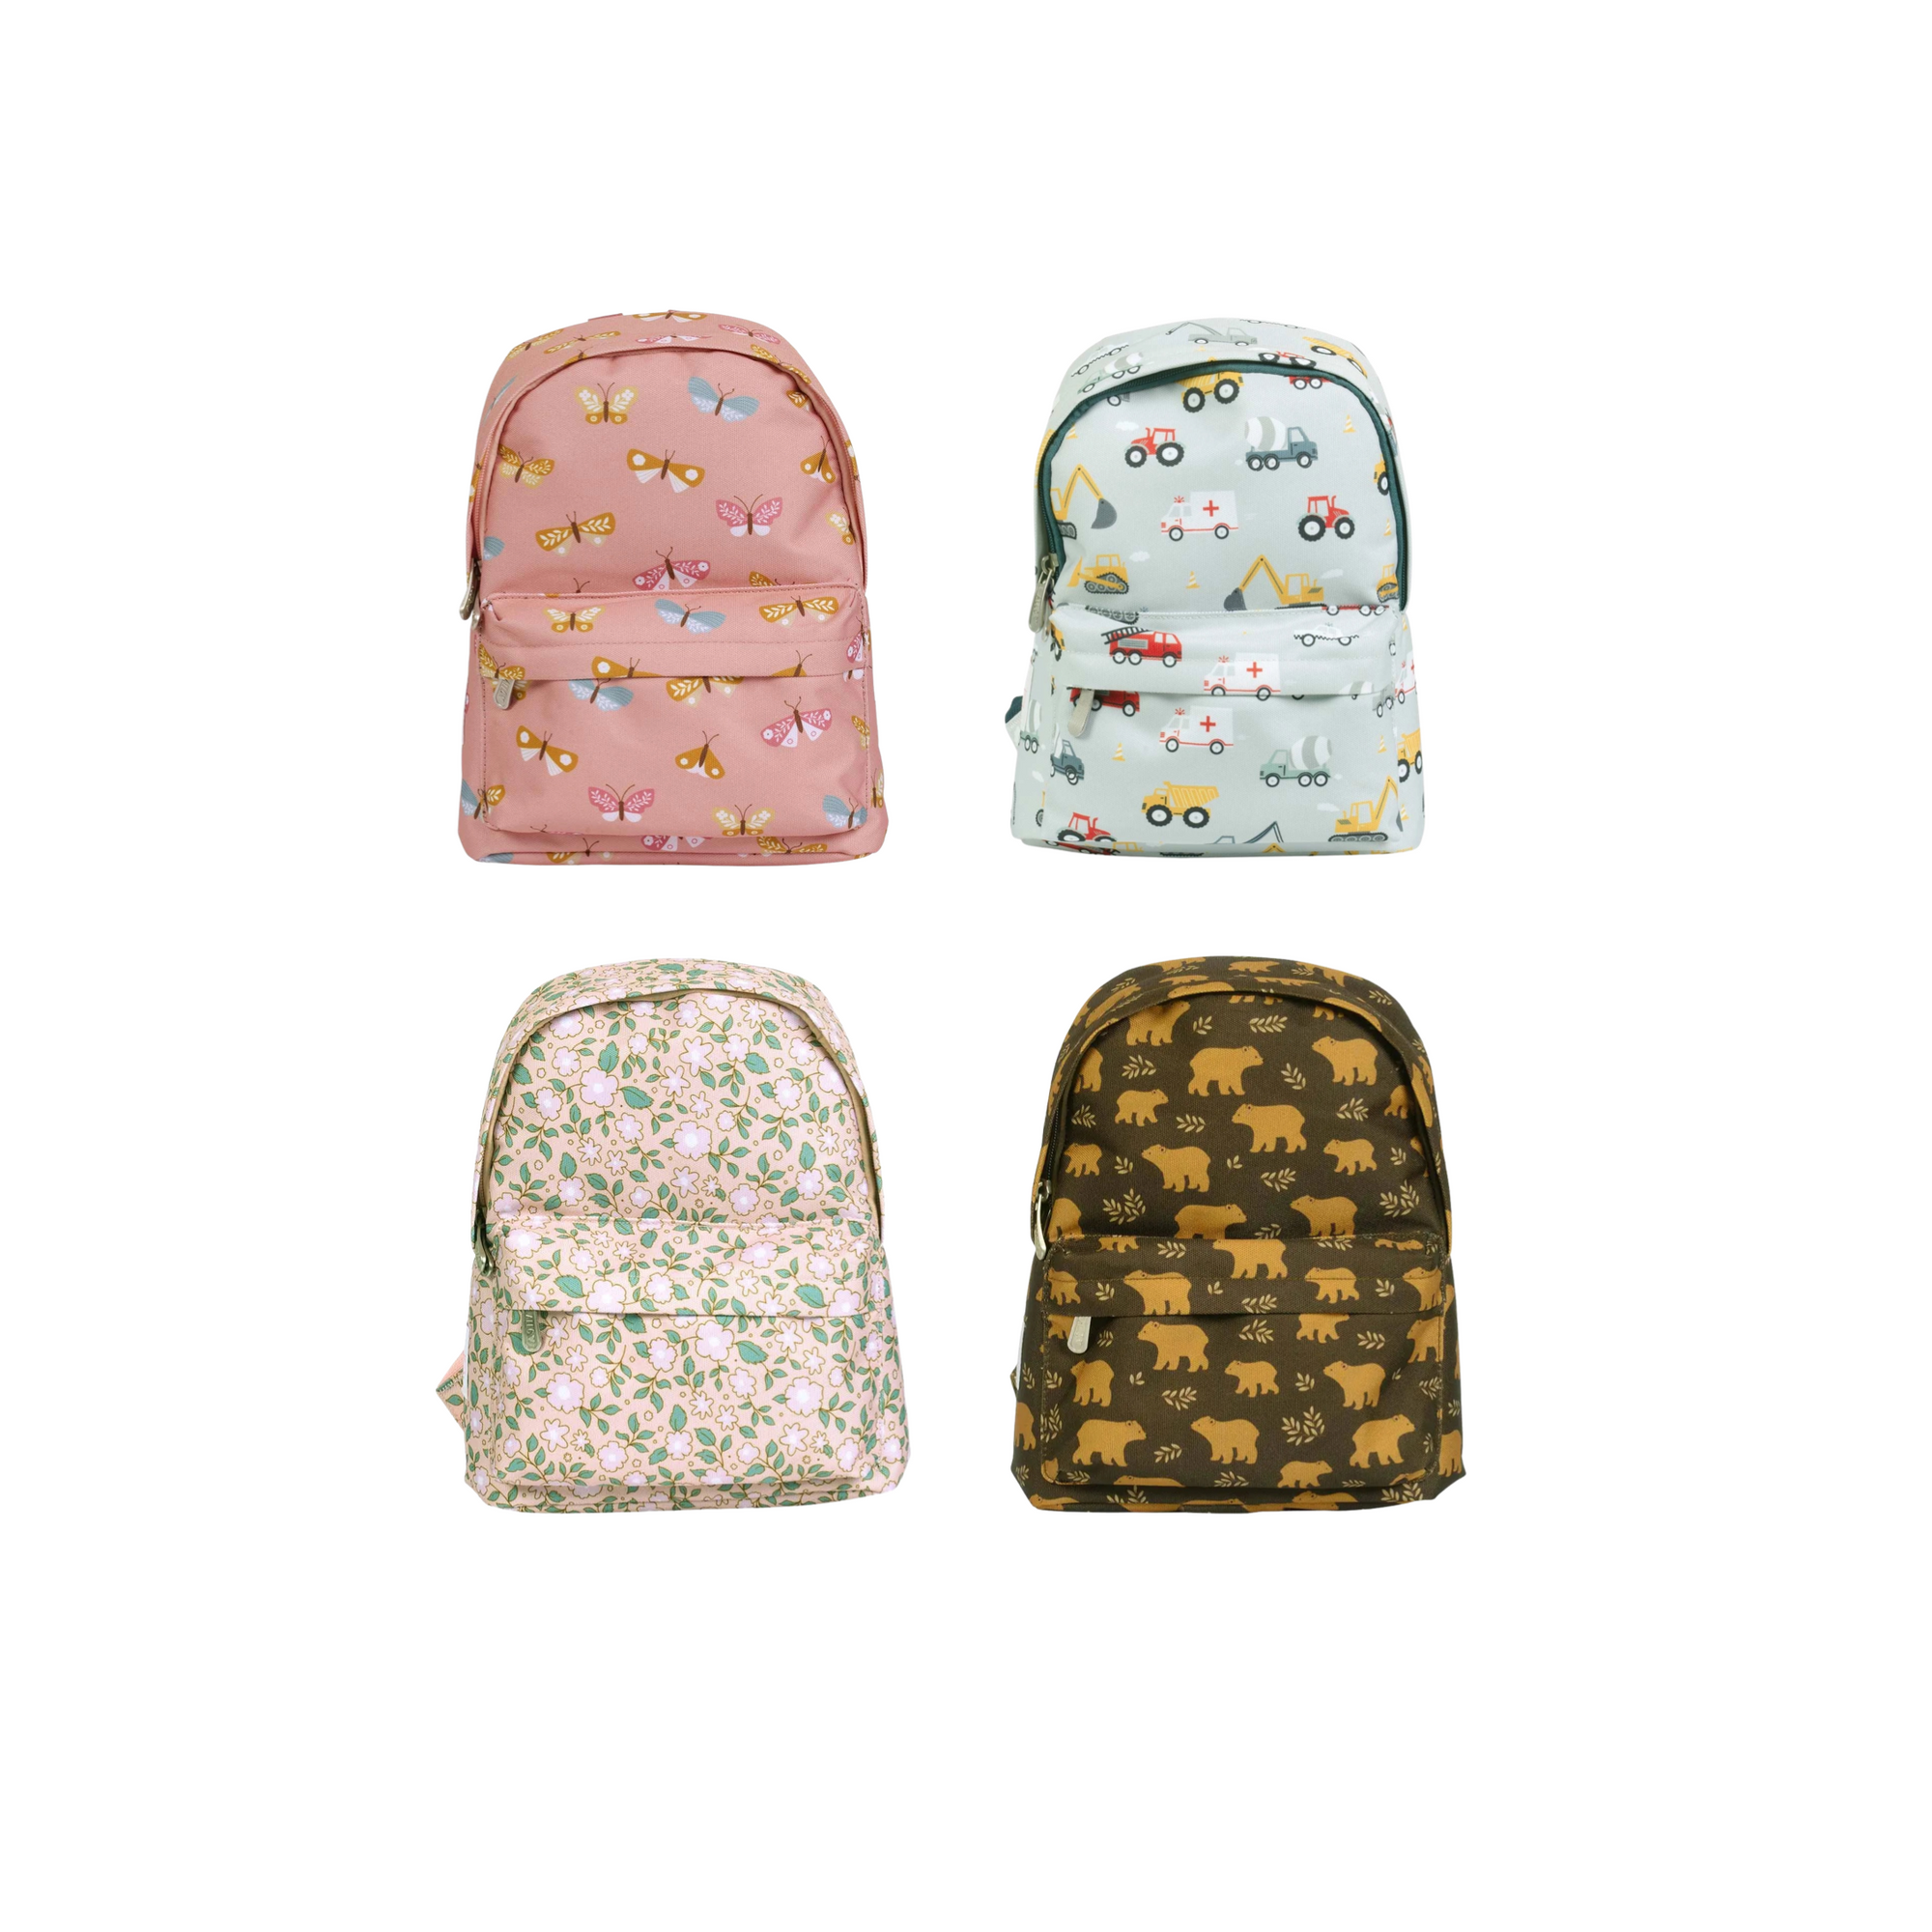 Little Kids Backpacks